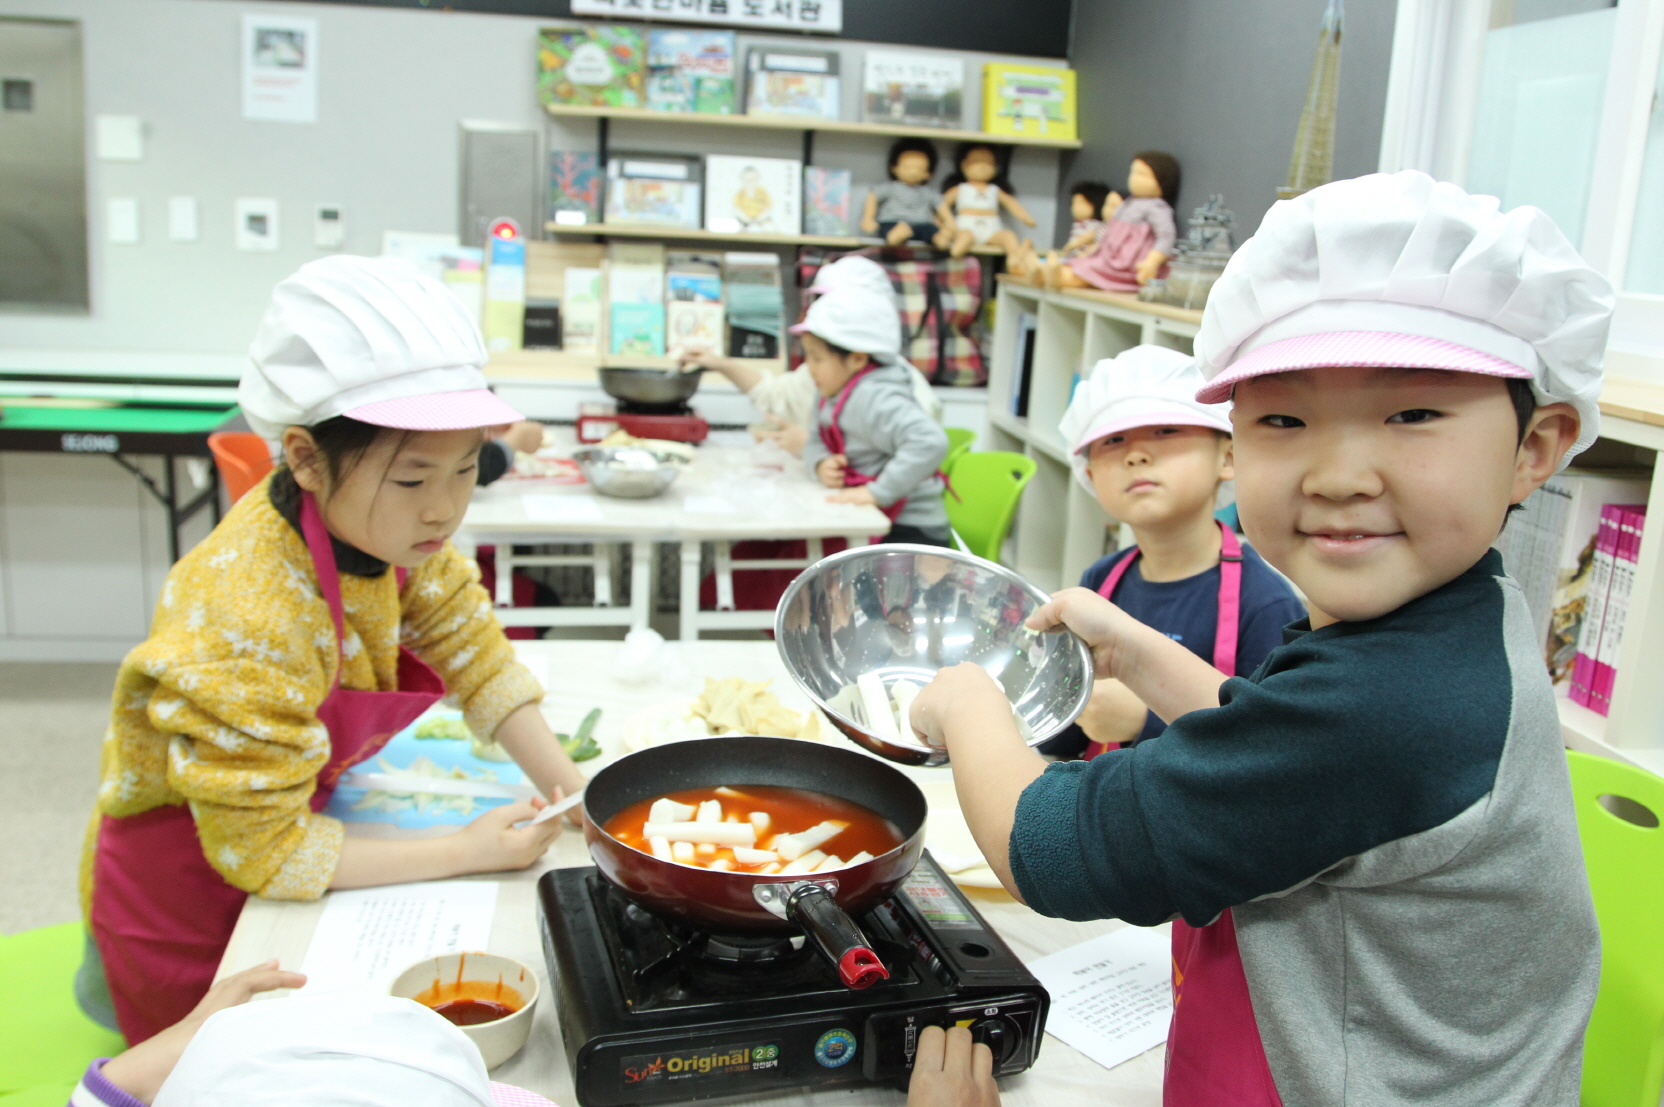 구로형 온종일 돌봄센터 참여기관인 오류1동 따뜻한 마음 청소년센터에서 아이들이 요리 프로그램에 참여하고 있다.  구로구 제공 